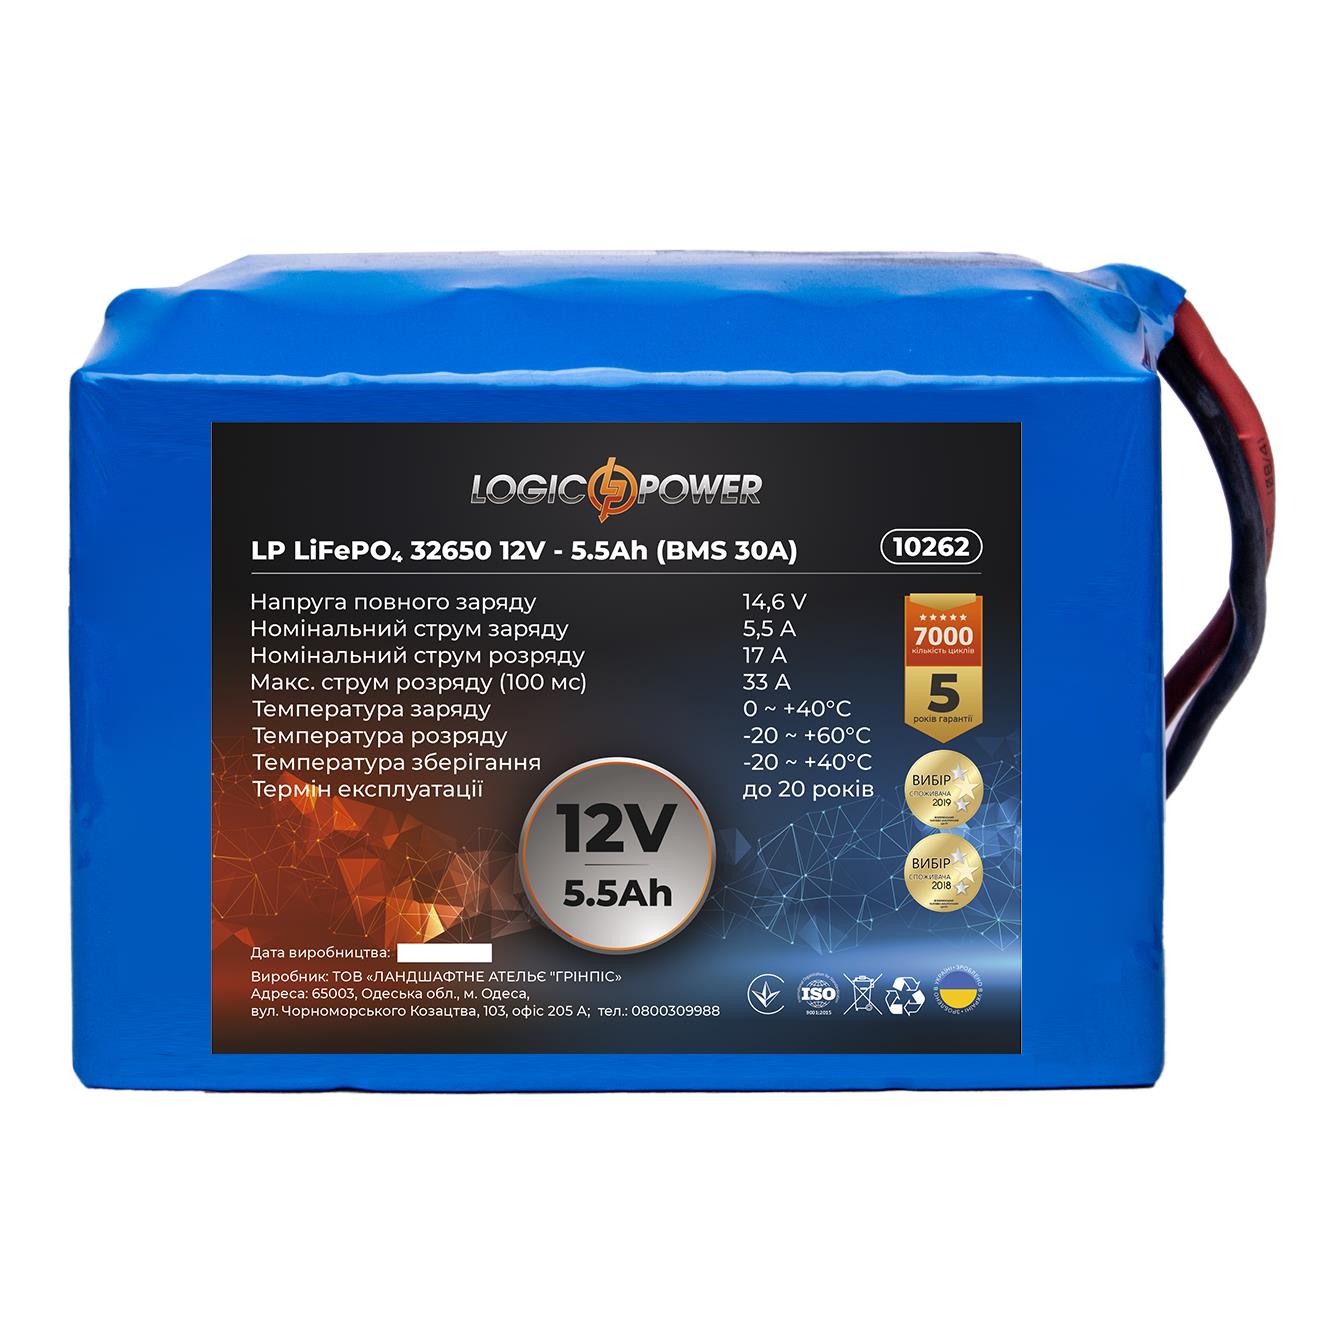 Аккумулятор литий-ионный LogicPower LP Li-ion 18650 2.0 Ач 12V - 20 Ah (BMS 20A) (10450) в интернет-магазине, главное фото